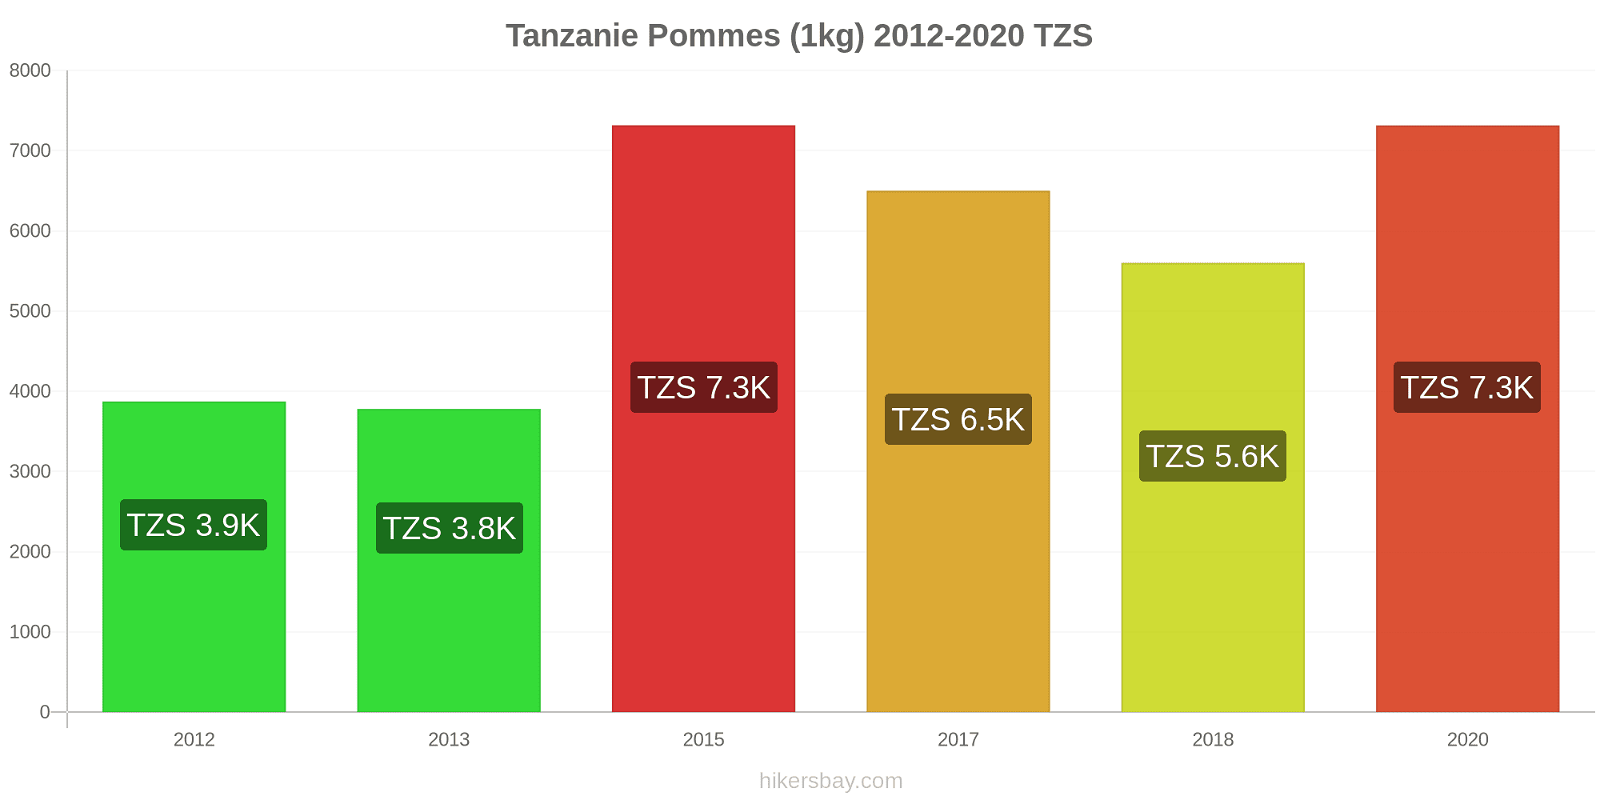 Tanzanie changements de prix Pommes (1kg) hikersbay.com